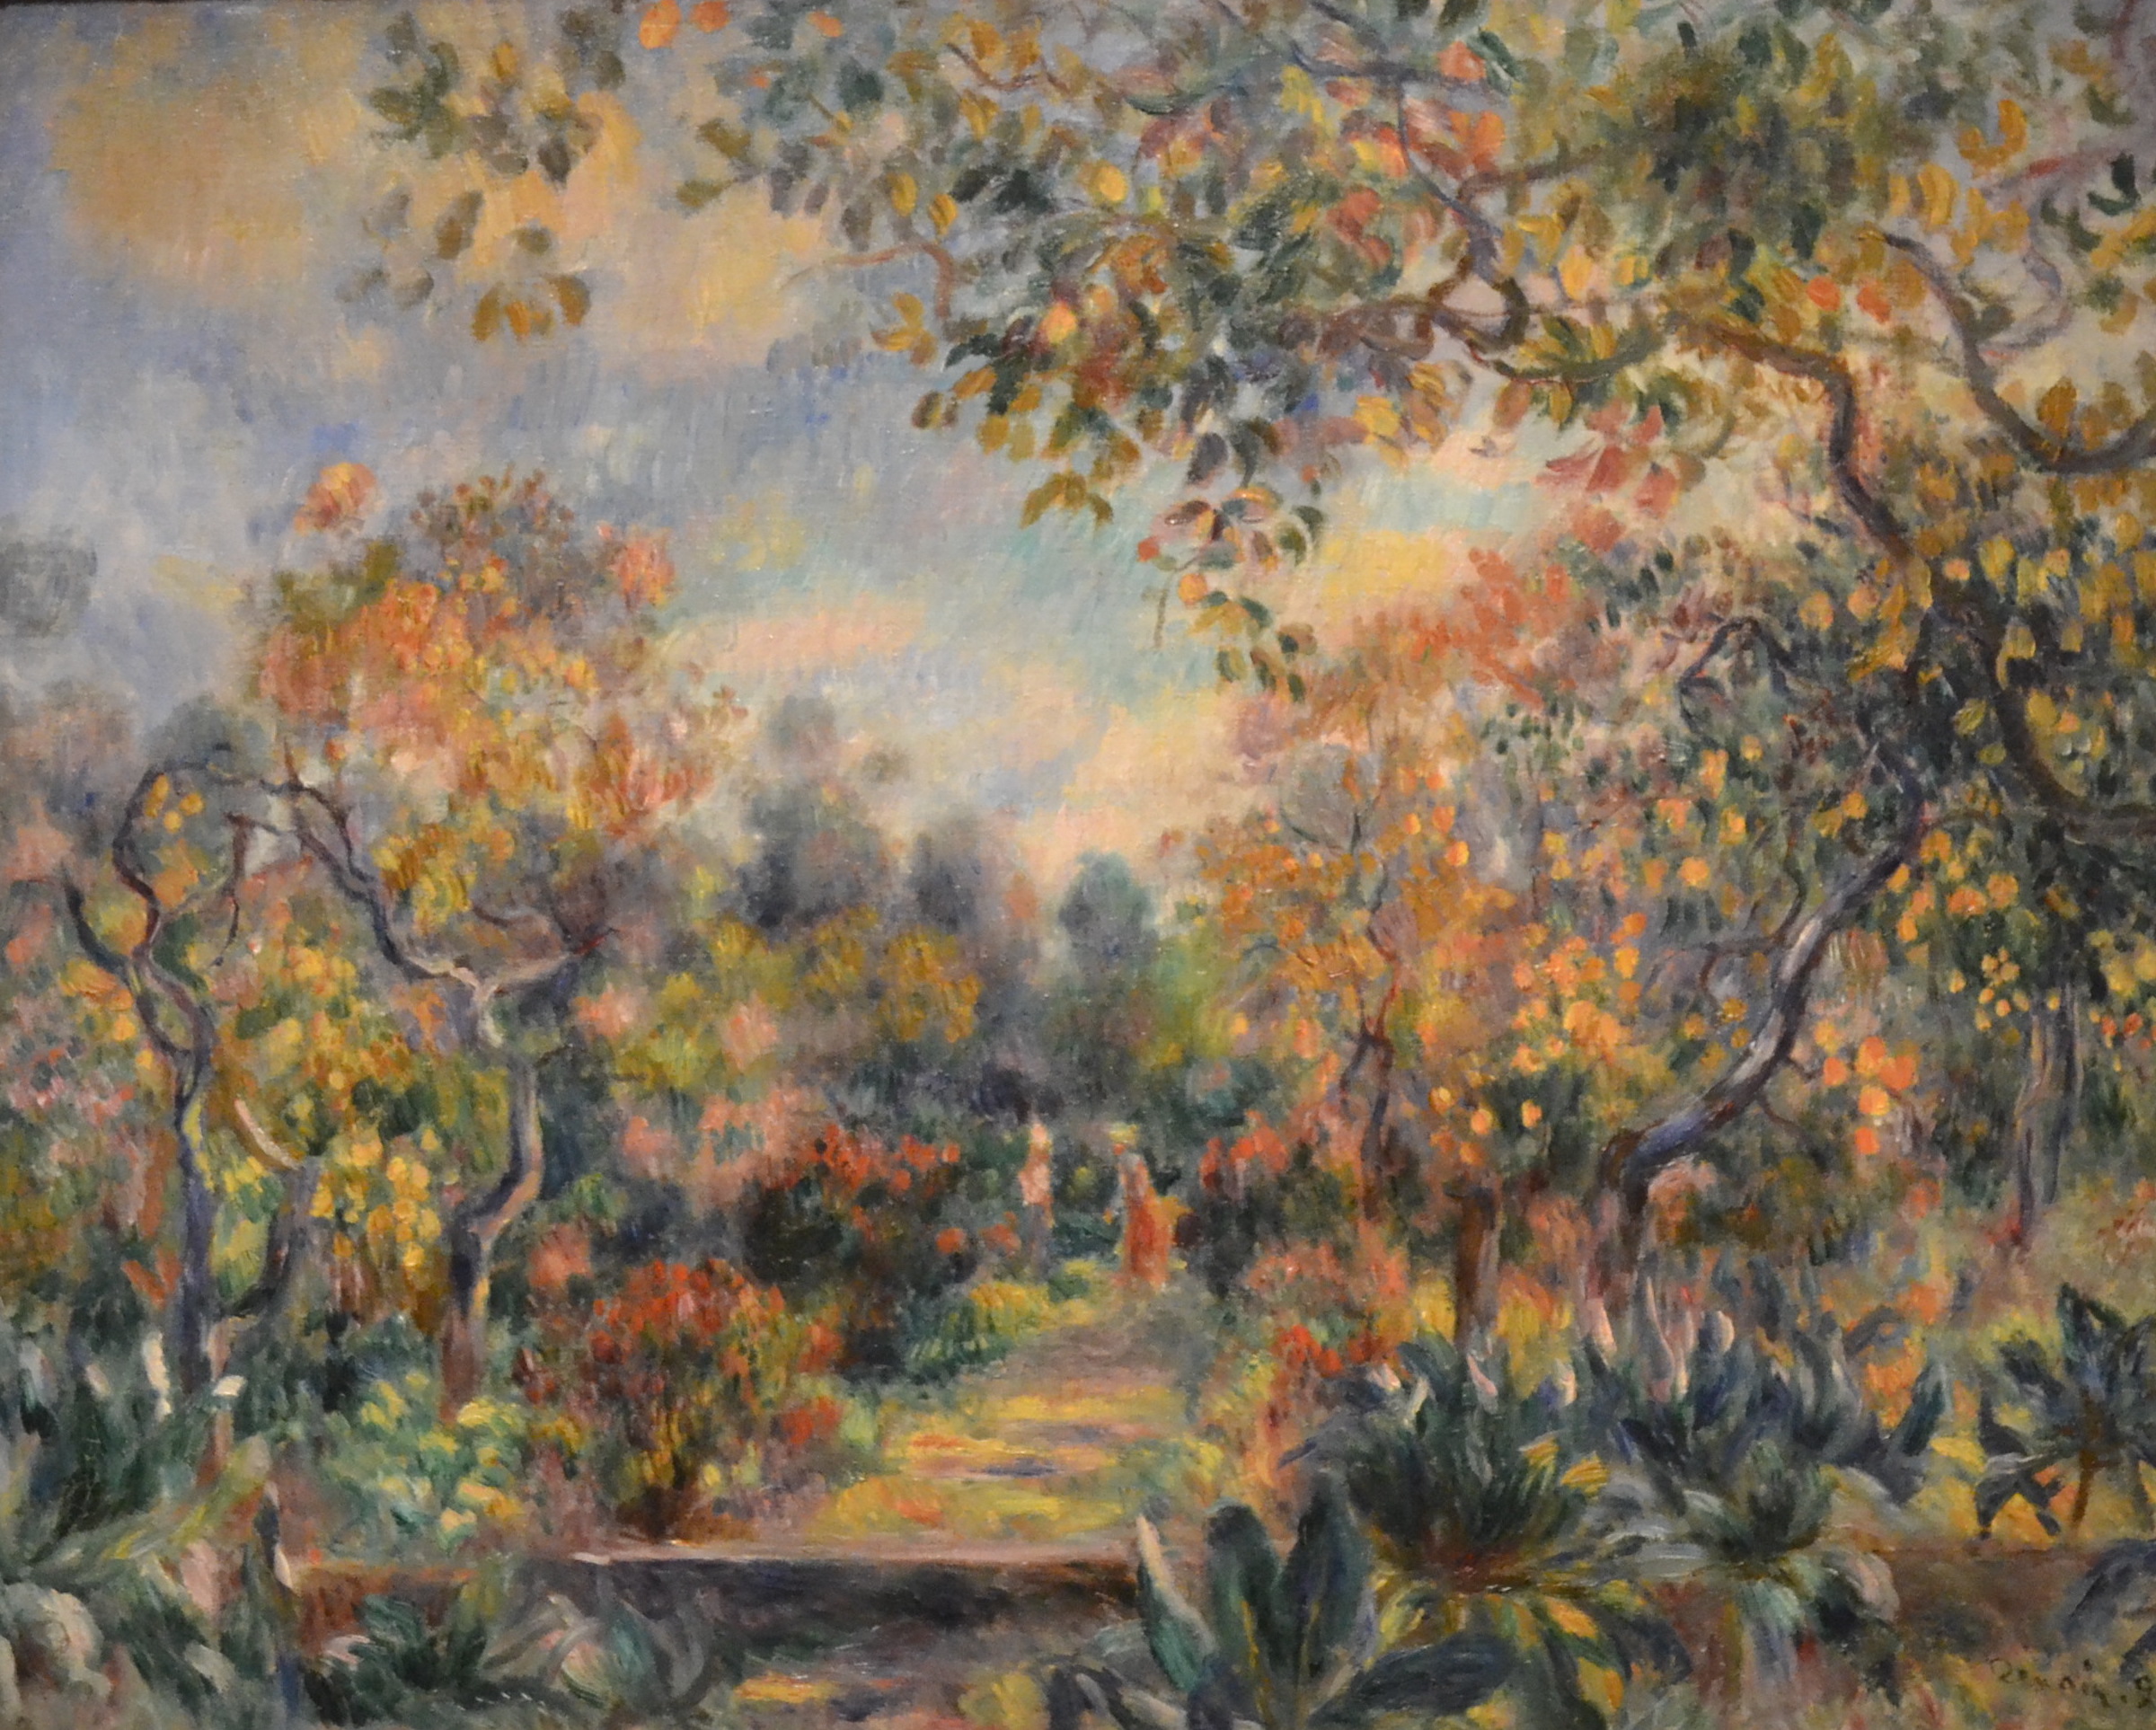 Landscape at Beaulieu - Pierre Auguste Renoir, 1899